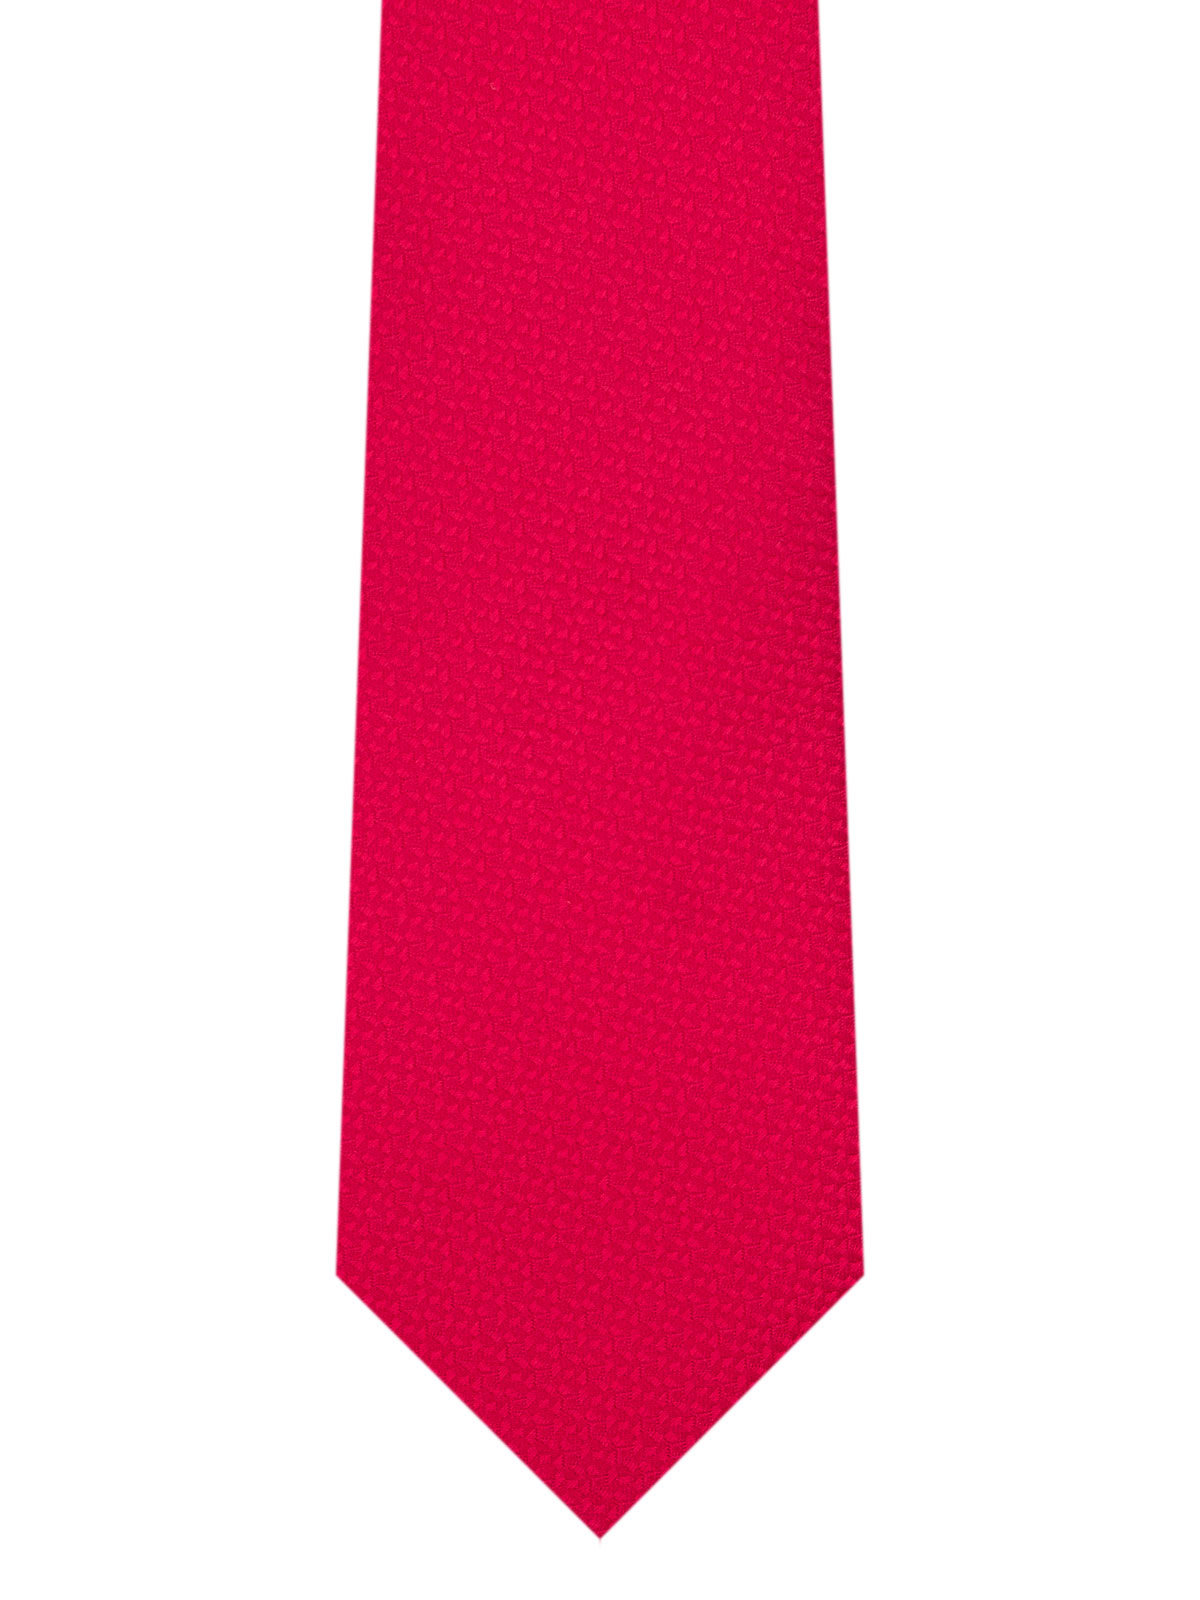 Δομημένη γραβάτα σε κόκκινο χρώμα - 10176 - € 14.06 img2